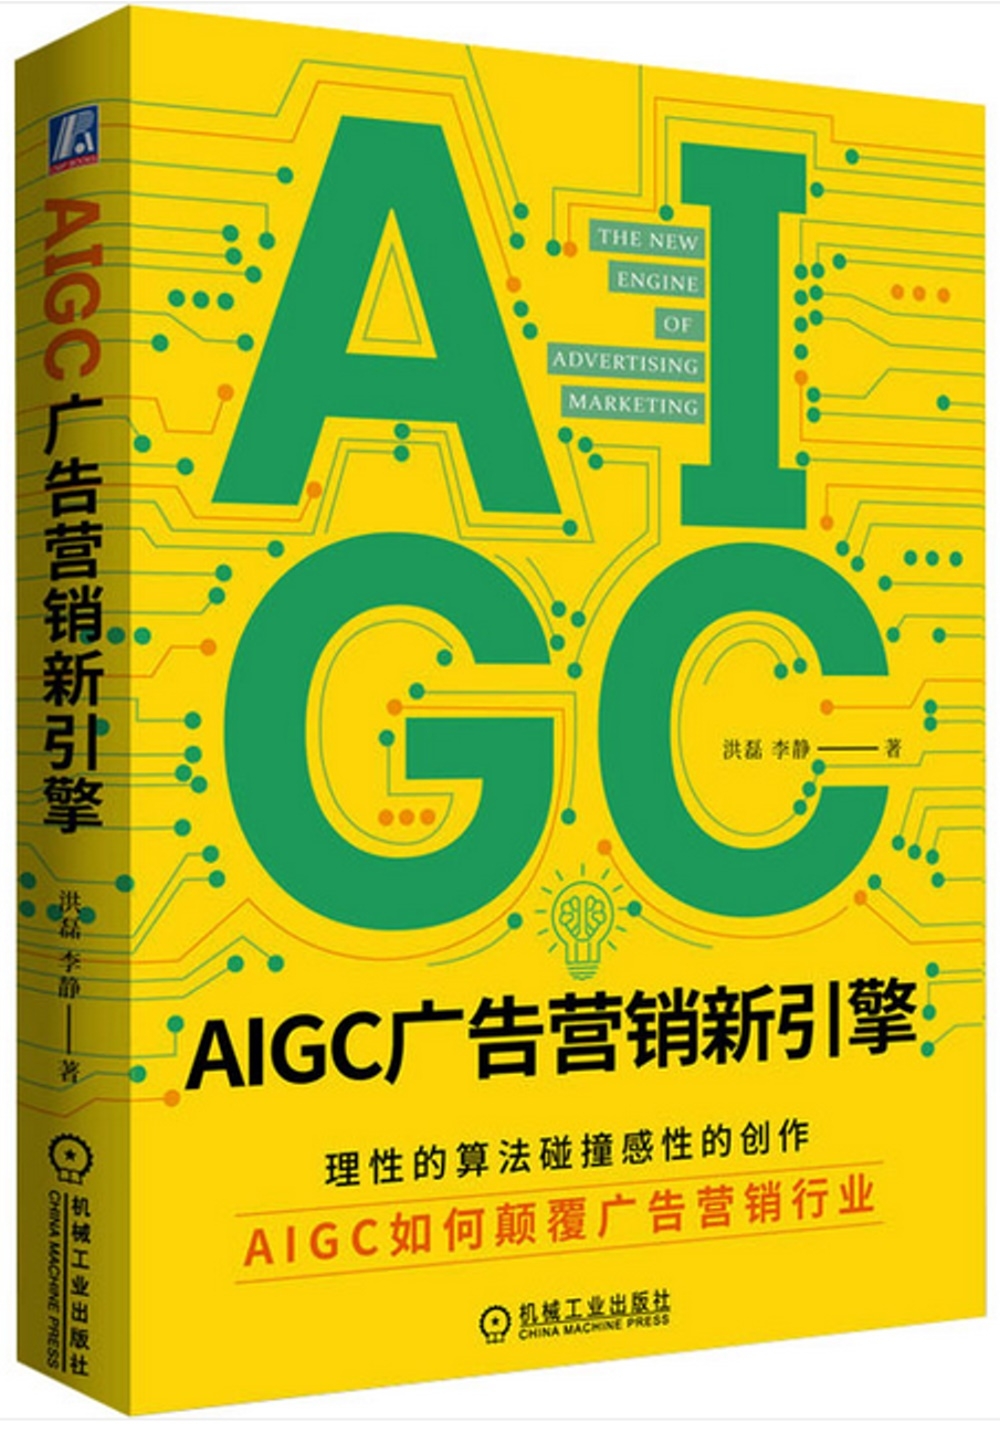 AIGC廣告營銷新引擎